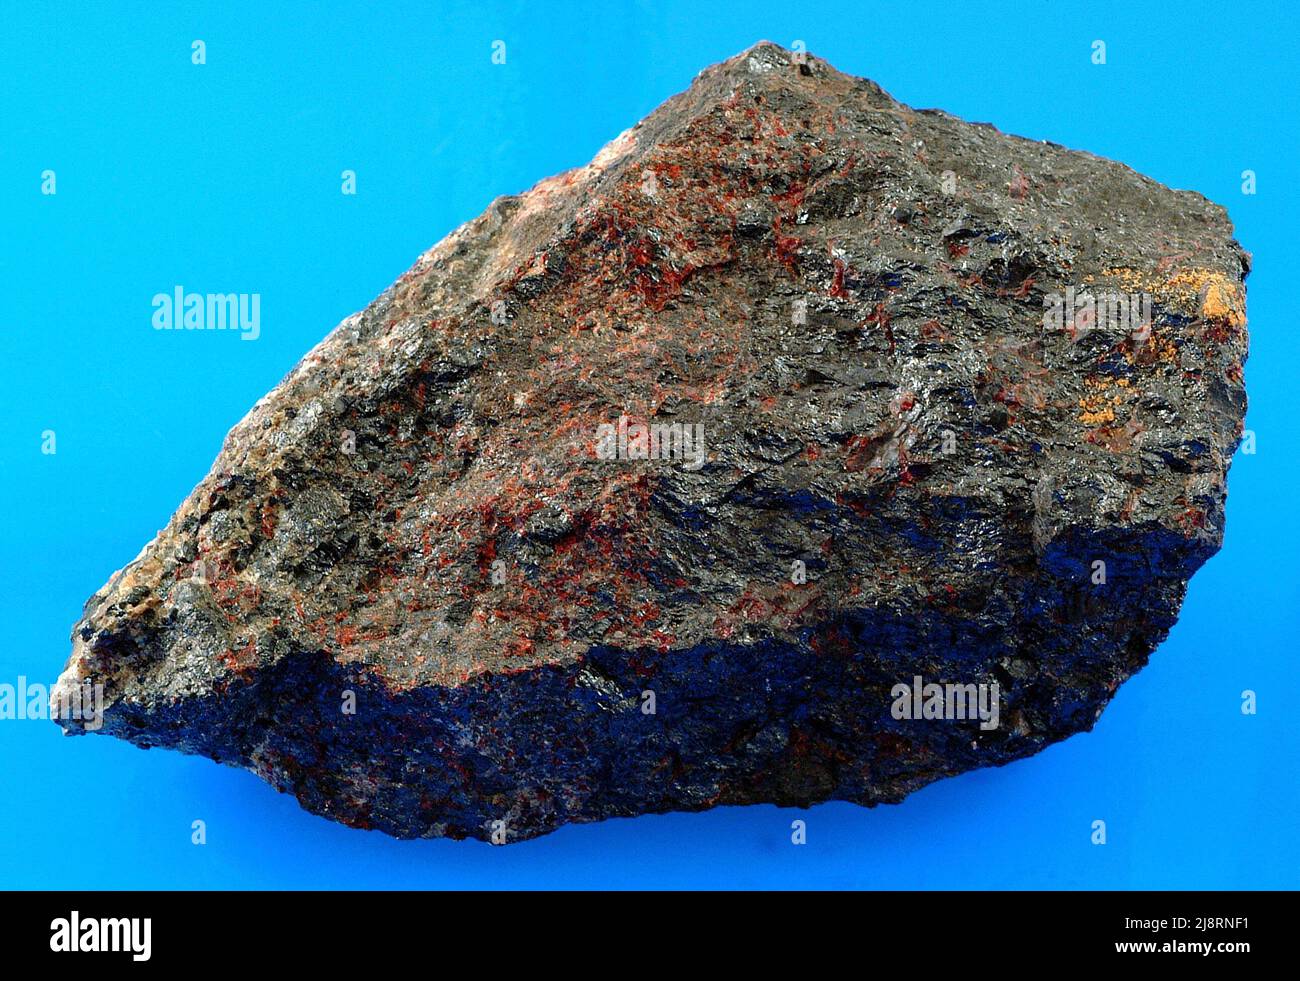 Franklinite, zinciter, willémite et calcite de Franklin, New Jersey, Etats-Unis. Ce spécimen provient de Franklin, dans le New Jersey, une localité de renommée mondiale qui a produit de nombreuses espèces minérales autrefois inconnues et exotiques. Il comprend principalement de la franklinite noire (oxyde de fer de zinc) et du zinciter rouge (oxyde de zinc). Il y a aussi du saulémite vert clair mineur (silicate de zinc) et du calcite blanc mineur (carbonate de calcium) (mais il est difficile du voir le long du bord gauche de l'échantillon). Franklin a toujours été une importante zone minière, et trois de ces minéraux sont des minerais de zinc. Banque D'Images